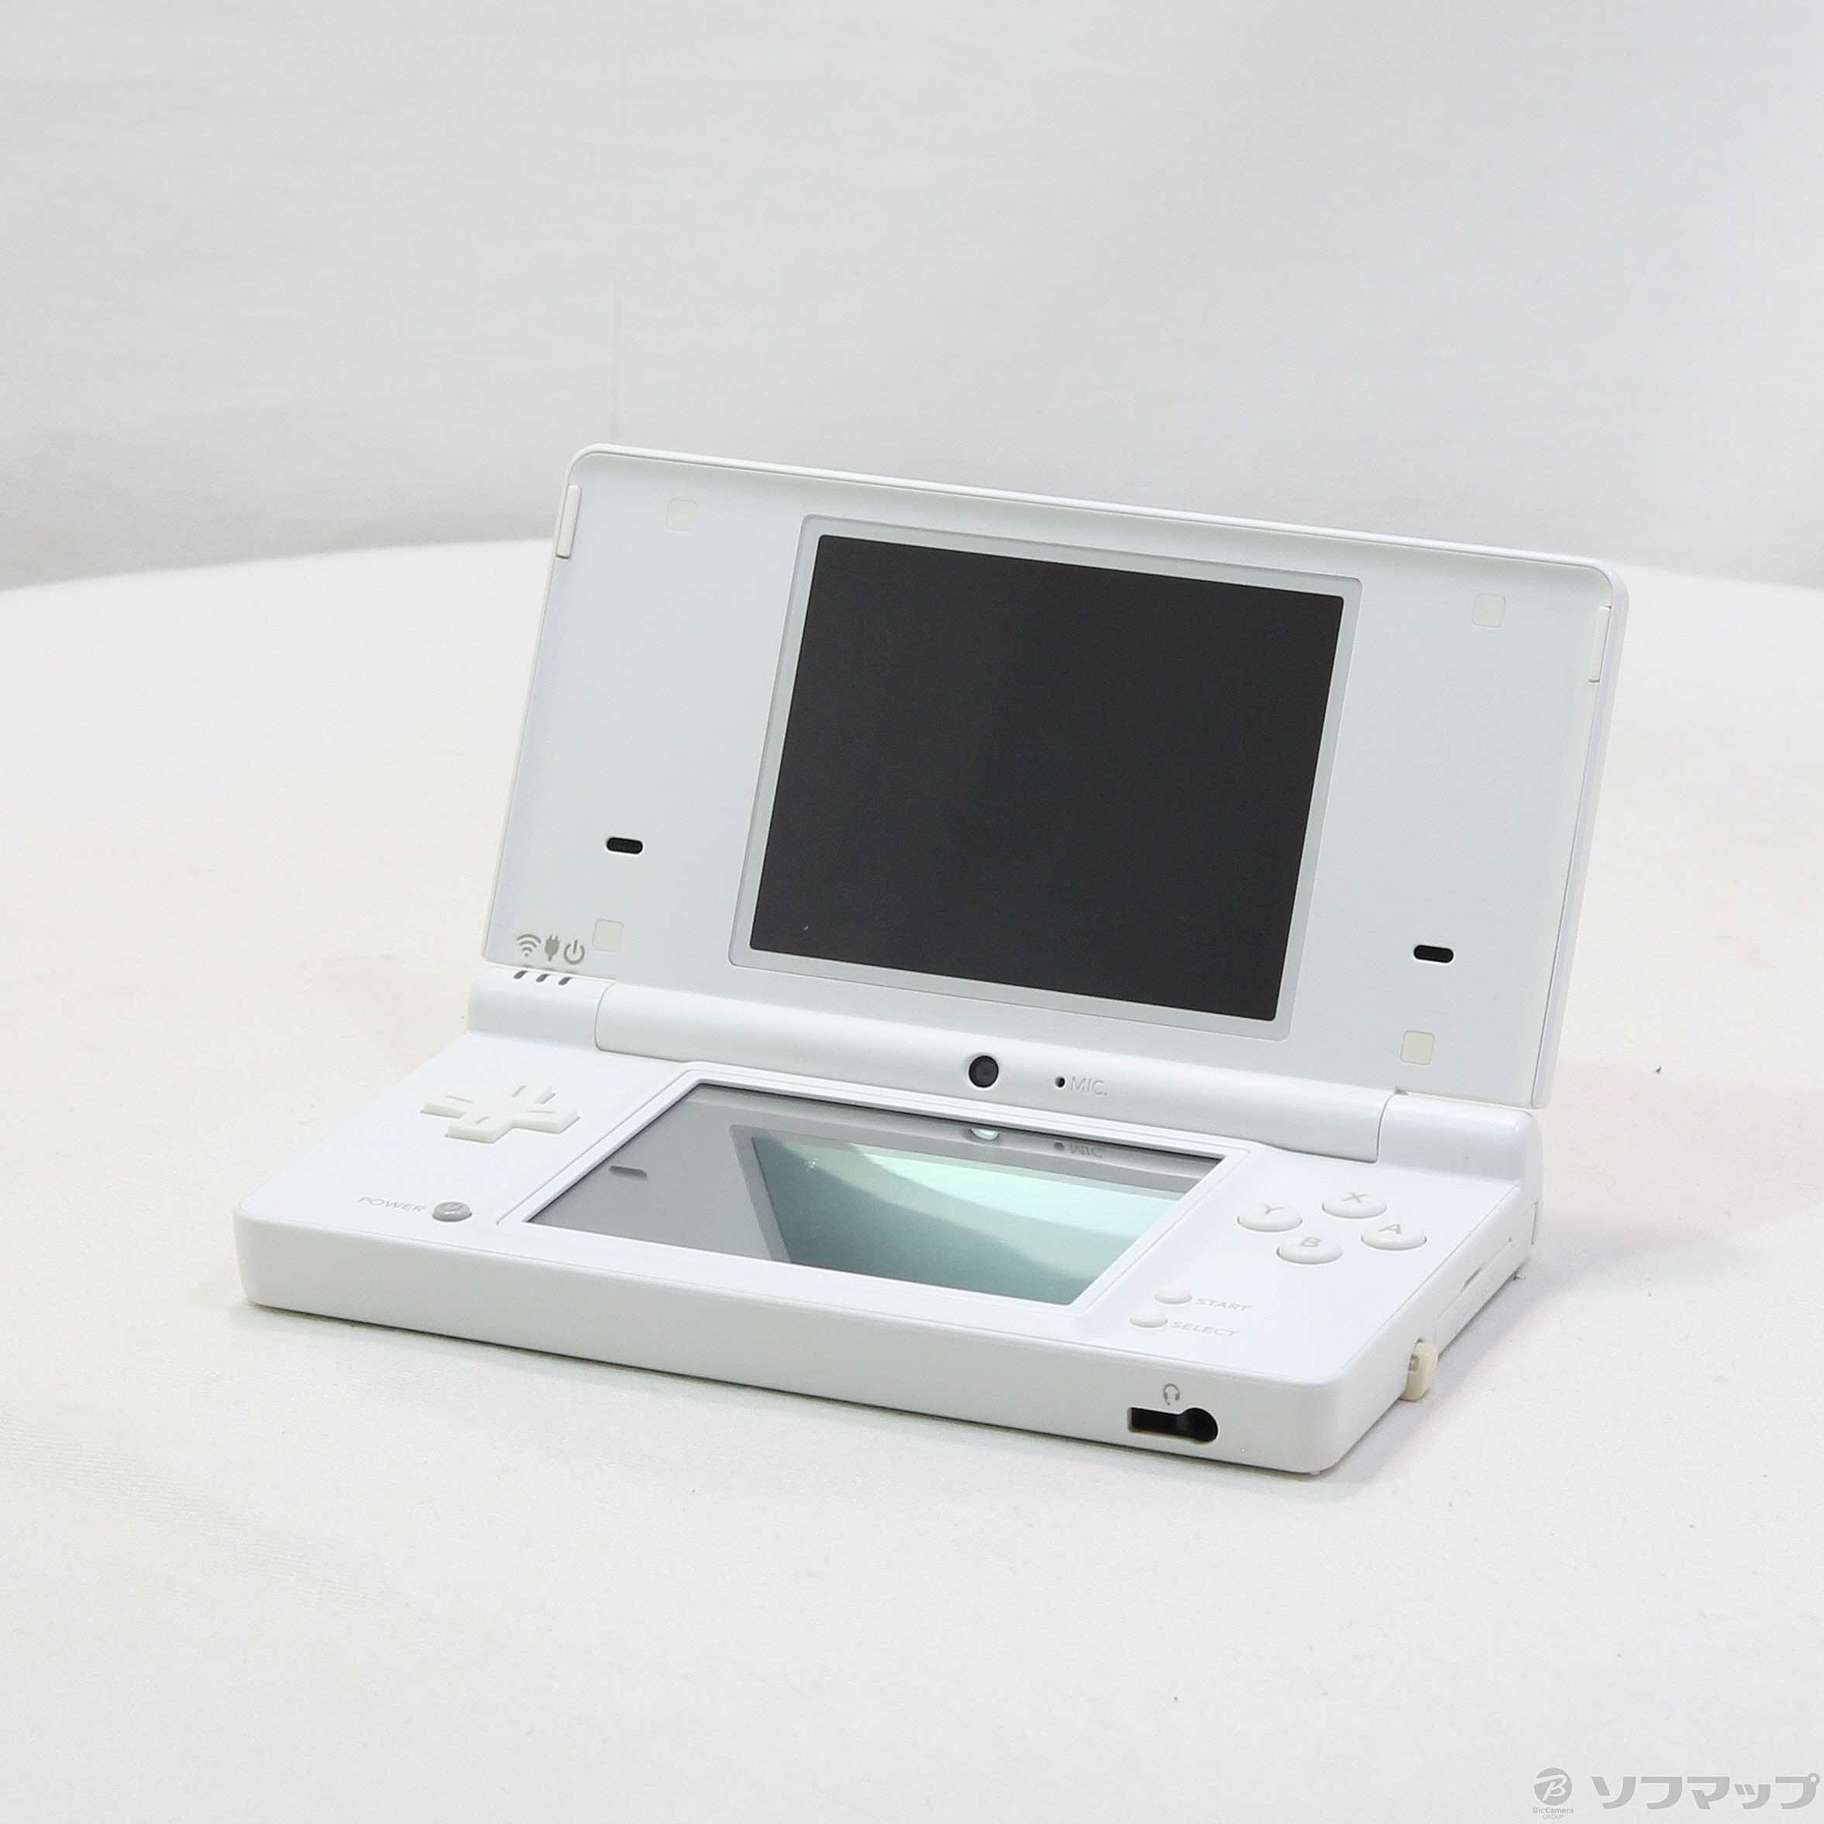 7,480円Nintendo NINTENDO DS ニンテンドー DSI WHITE